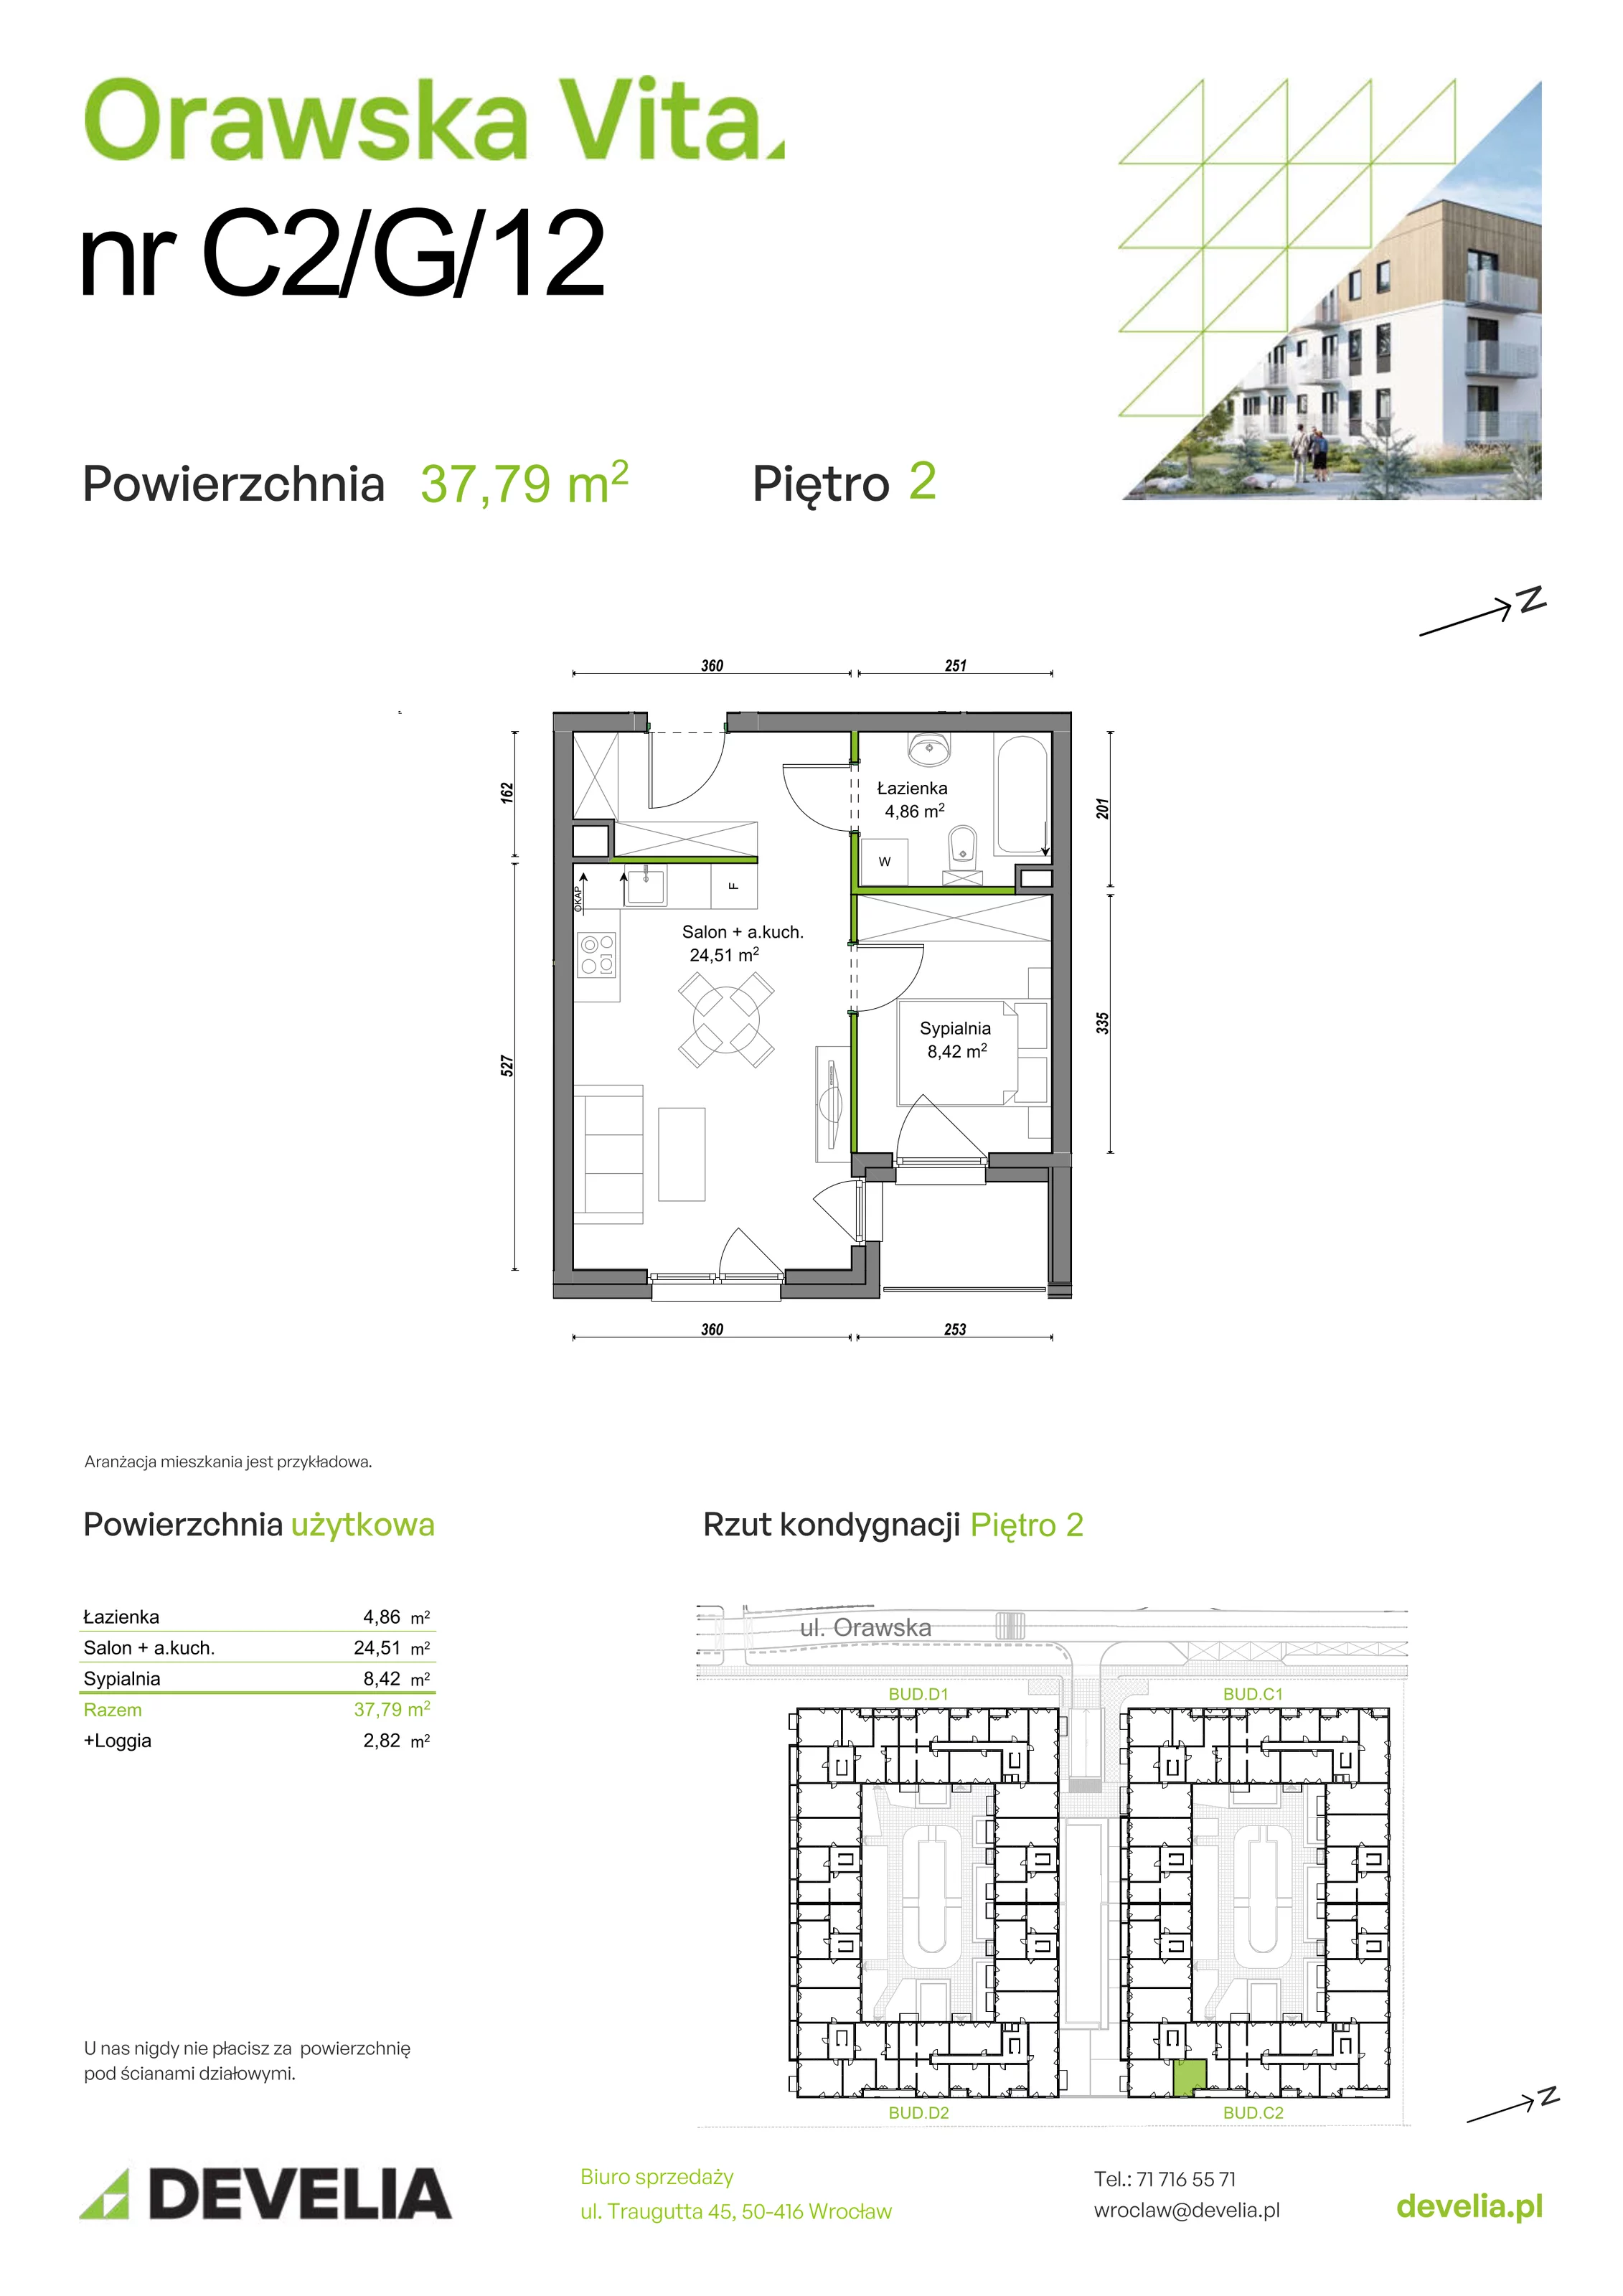 Mieszkanie 37,79 m², piętro 2, oferta nr C2/G/12, Orawska Vita, Wrocław, Ołtaszyn, Krzyki, ul. Orawska 73